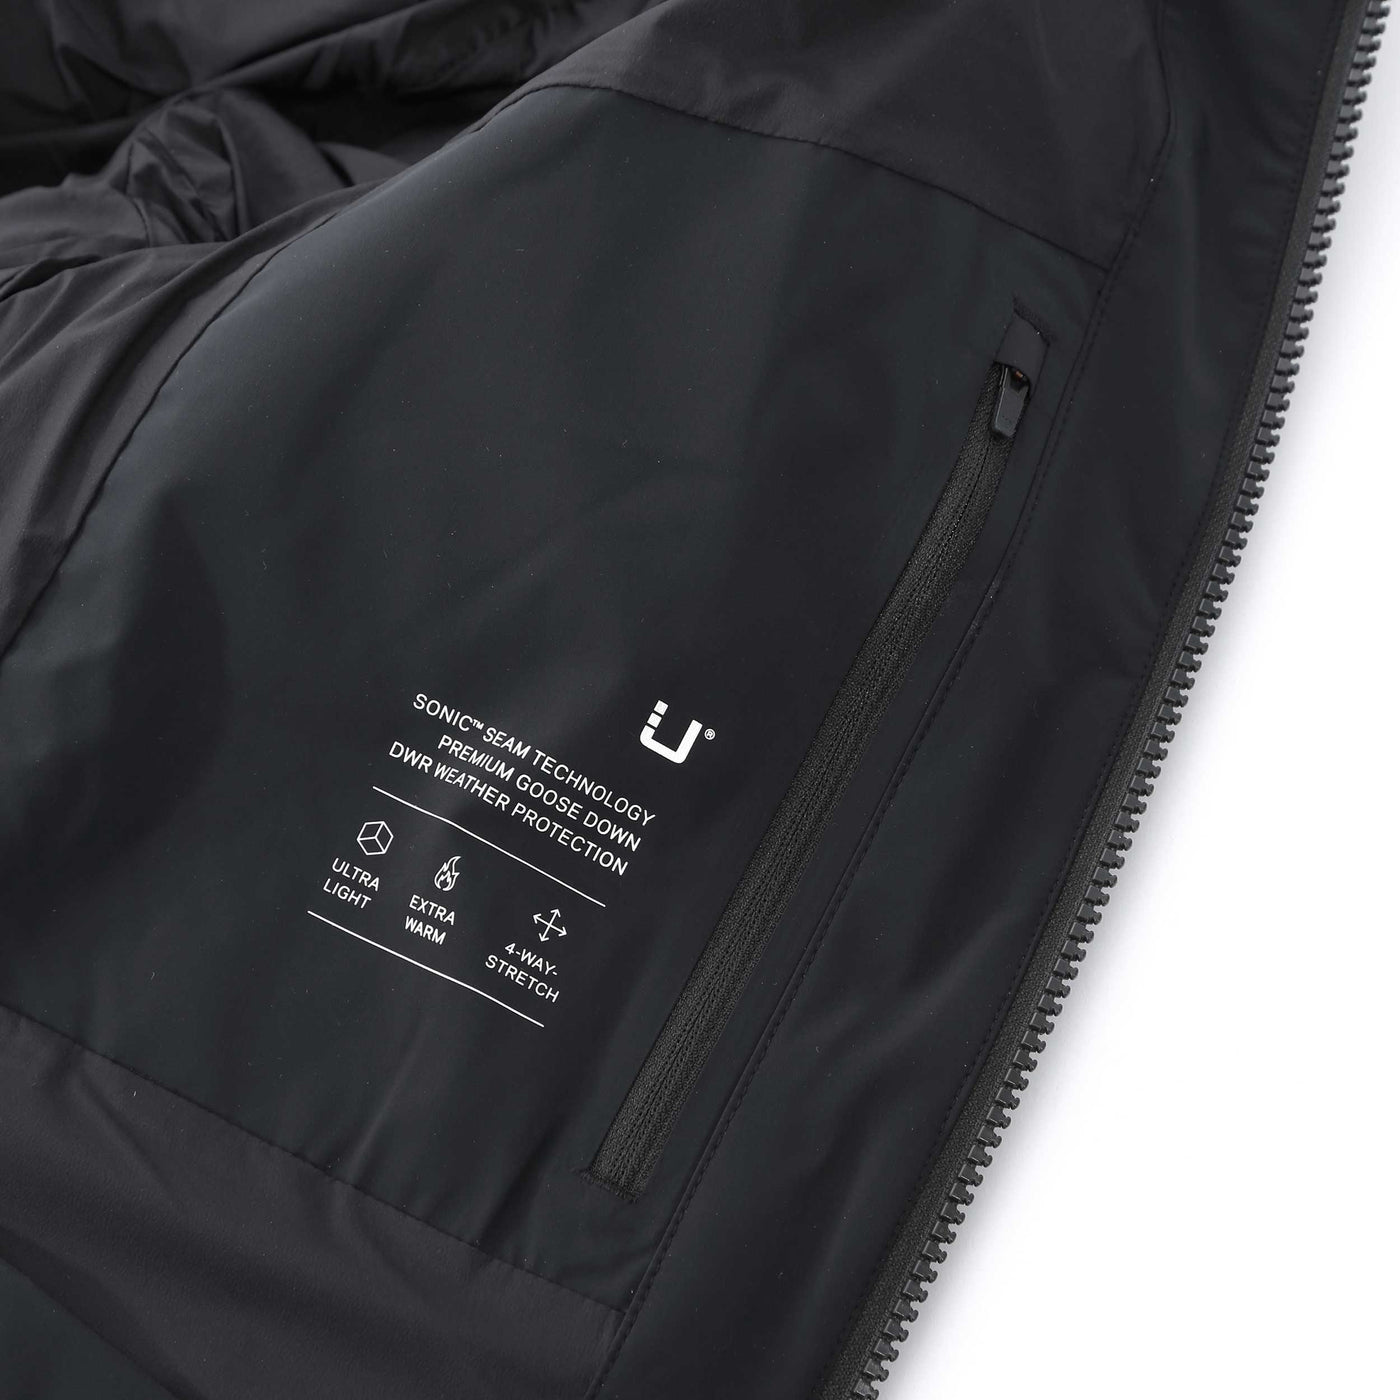 UBR Titan Jacket in Black Inside